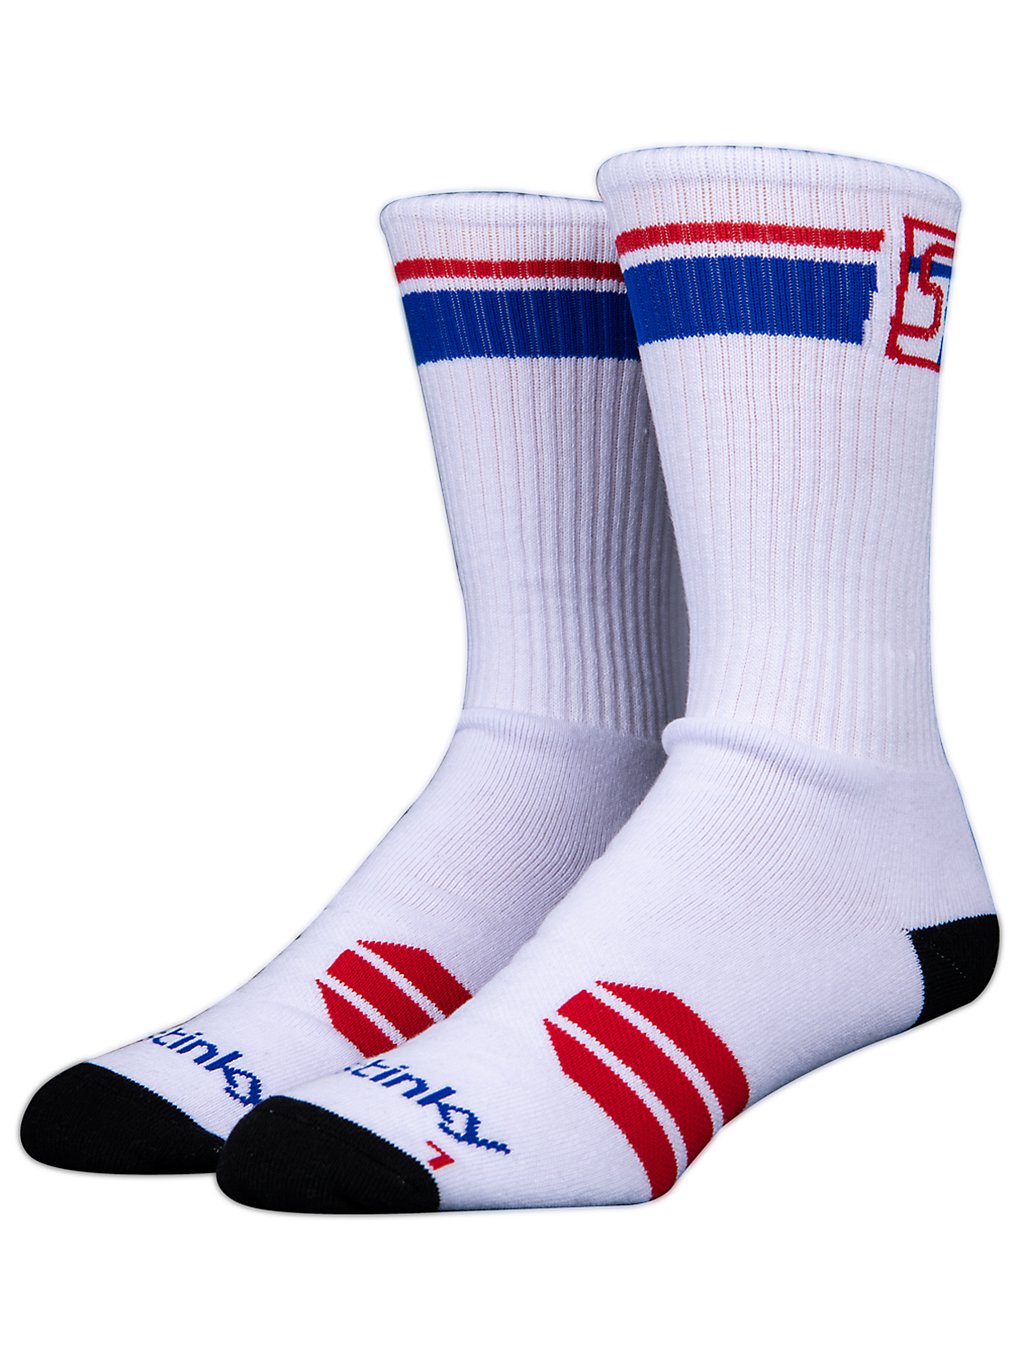 Stinky Socks Starter Skate Socks white/red/blue